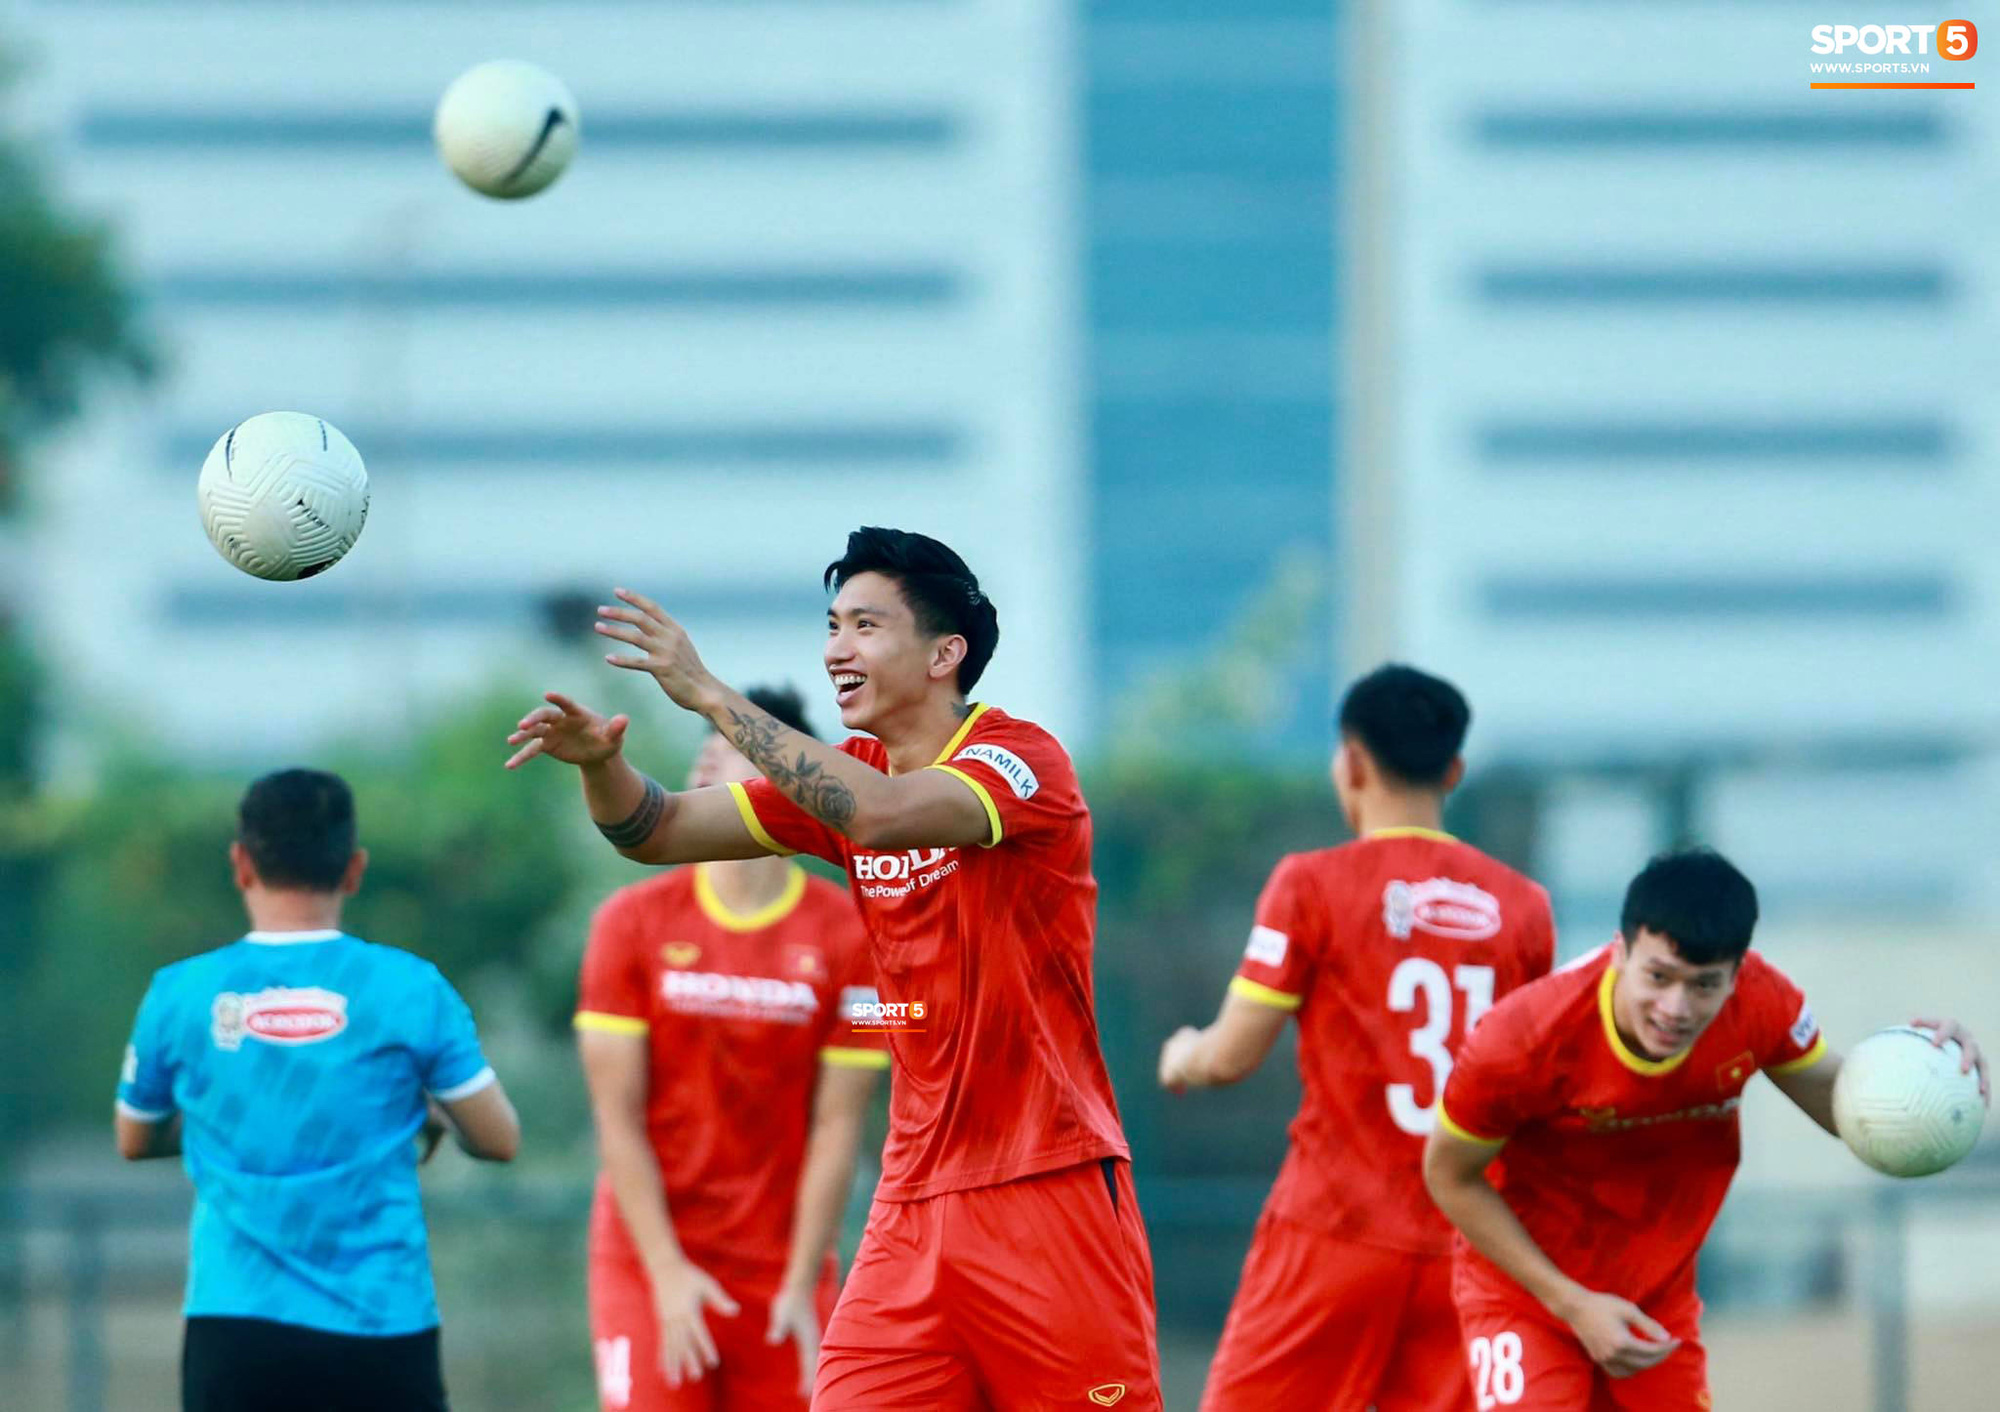 [Trực tiếp từ UAE] Buổi tập đầu tiên của tuyển Việt Nam sau trận gặp Indonesia: Tuấn Anh, Văn Toàn cùng có mặt - Ảnh 3.